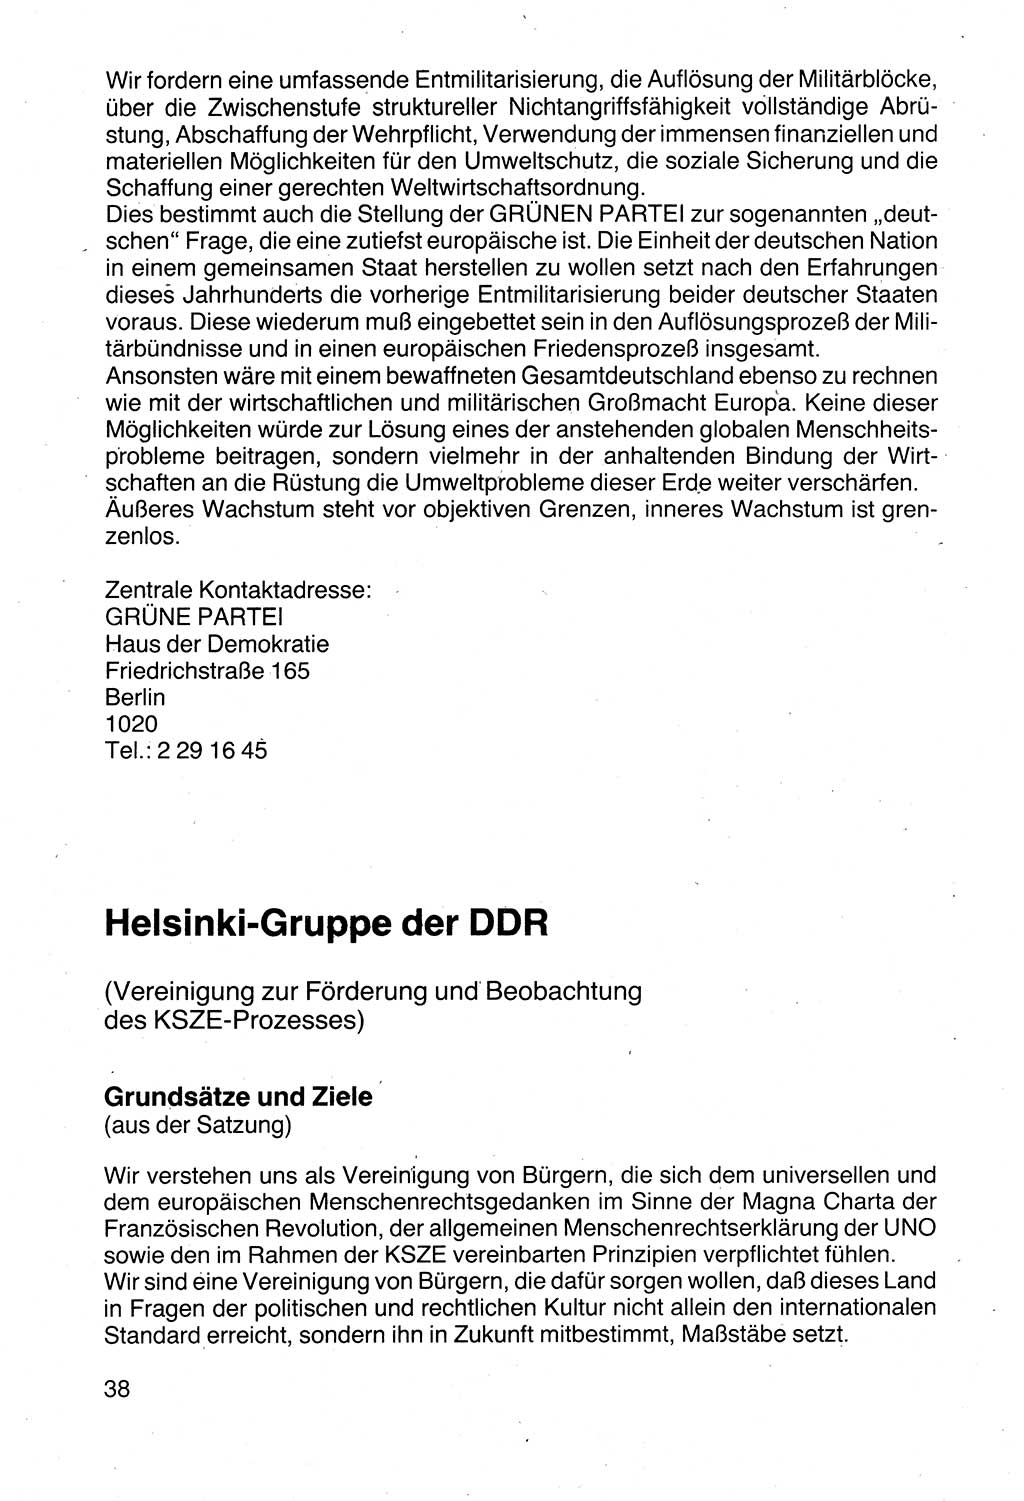 Politische Parteien und Bewegungen der DDR (Deutsche Demokratische Republik) über sich selbst 1990, Seite 38 (Pol. Part. Bew. DDR 1990, S. 38)